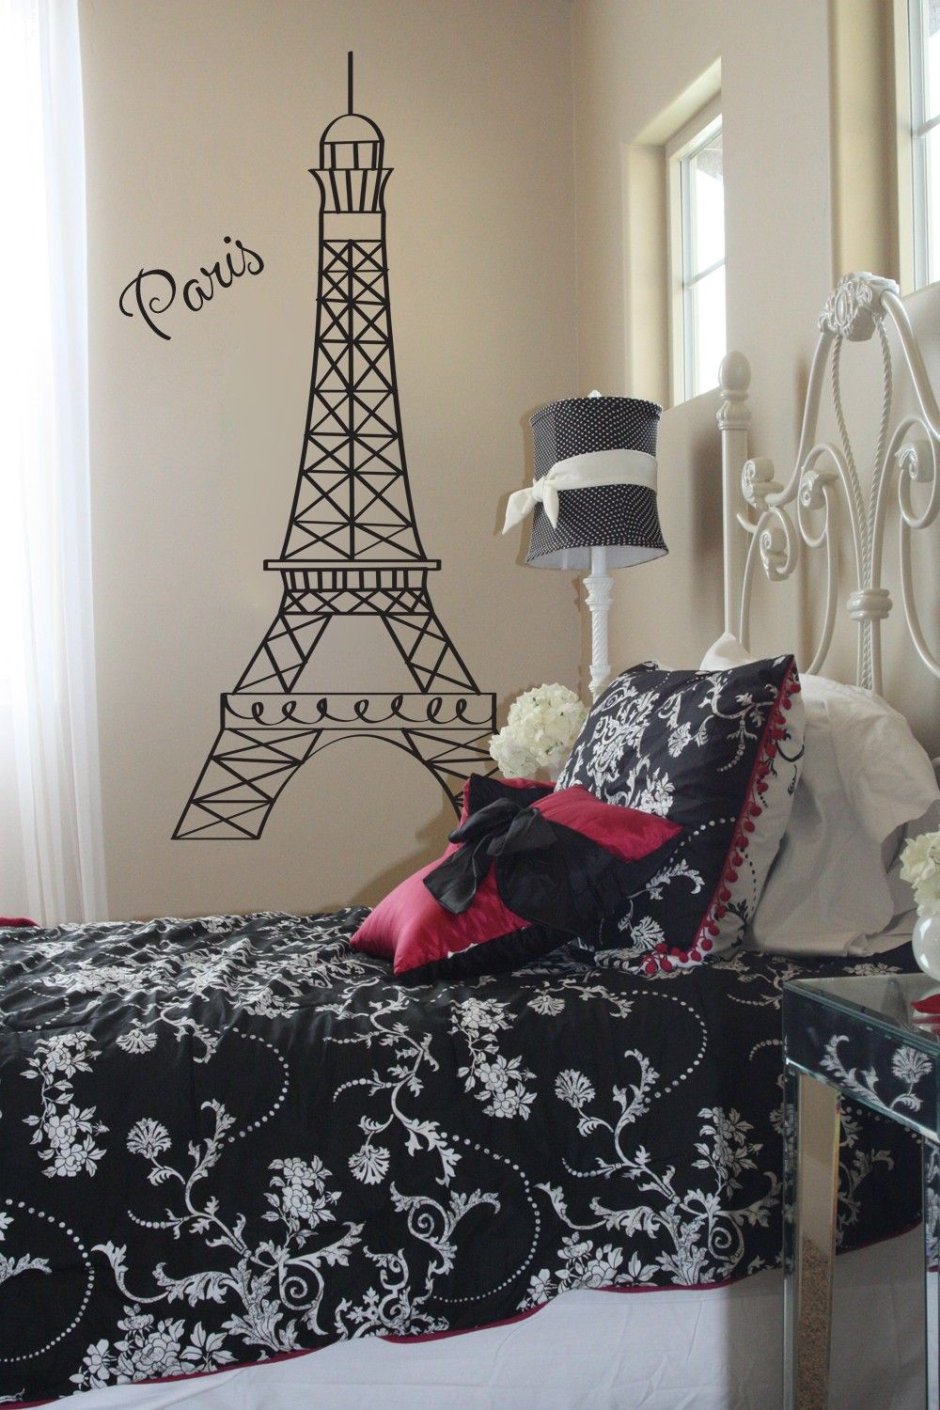 Комната в парижском стиле